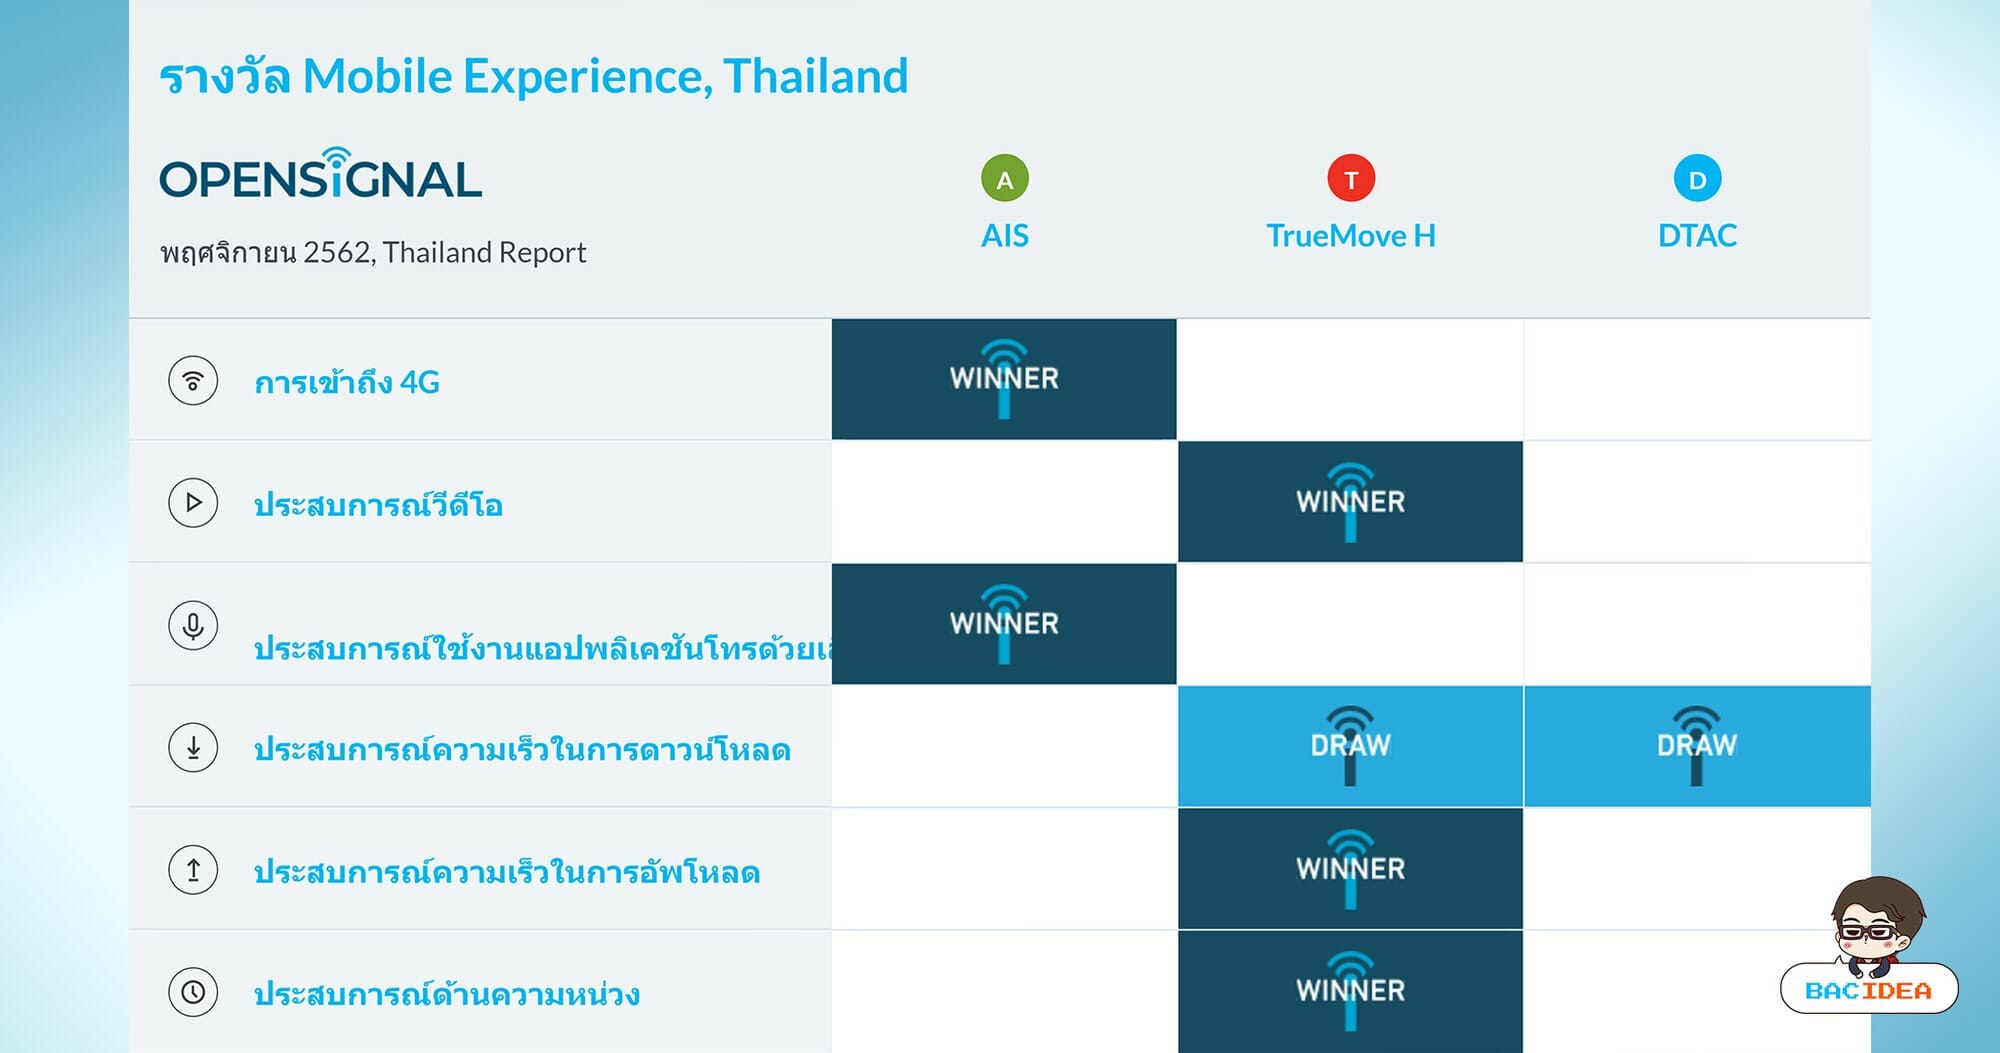 OpenSignal เผยรายงานวิเคราะห์ประสบการณ์เครือข่ายมือถือของไทย TrueMove H นำอันดับหนึ่ง 1